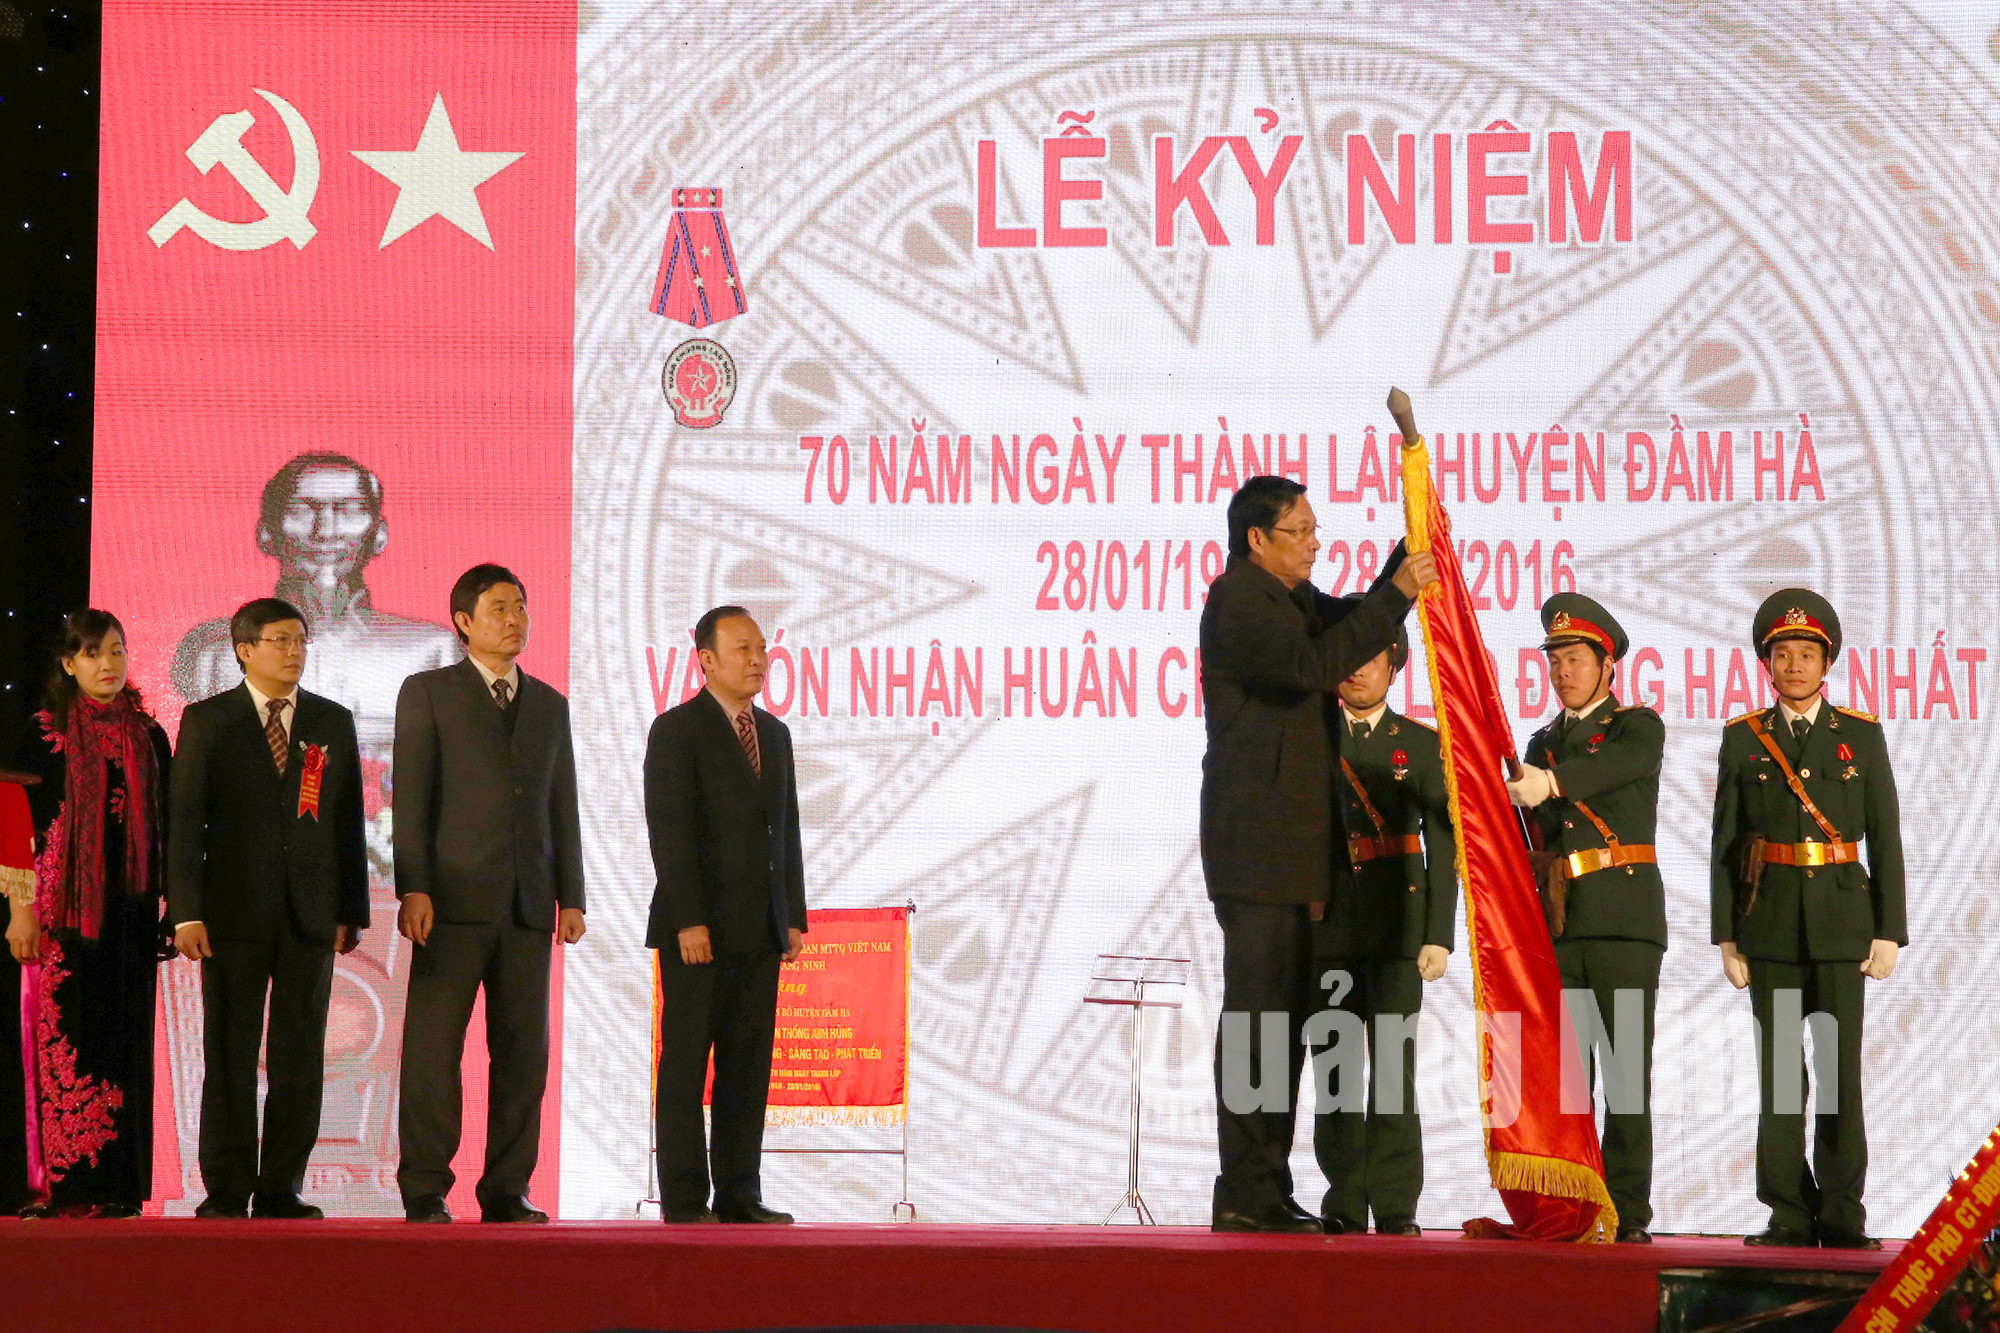 Đồng chí Nguyễn Văn Đọc, Bí thư Tỉnh ủy, Chủ tịch HĐND tỉnh trao Huân chương Lao động hạng Nhất cho huyện Đầm Hà.